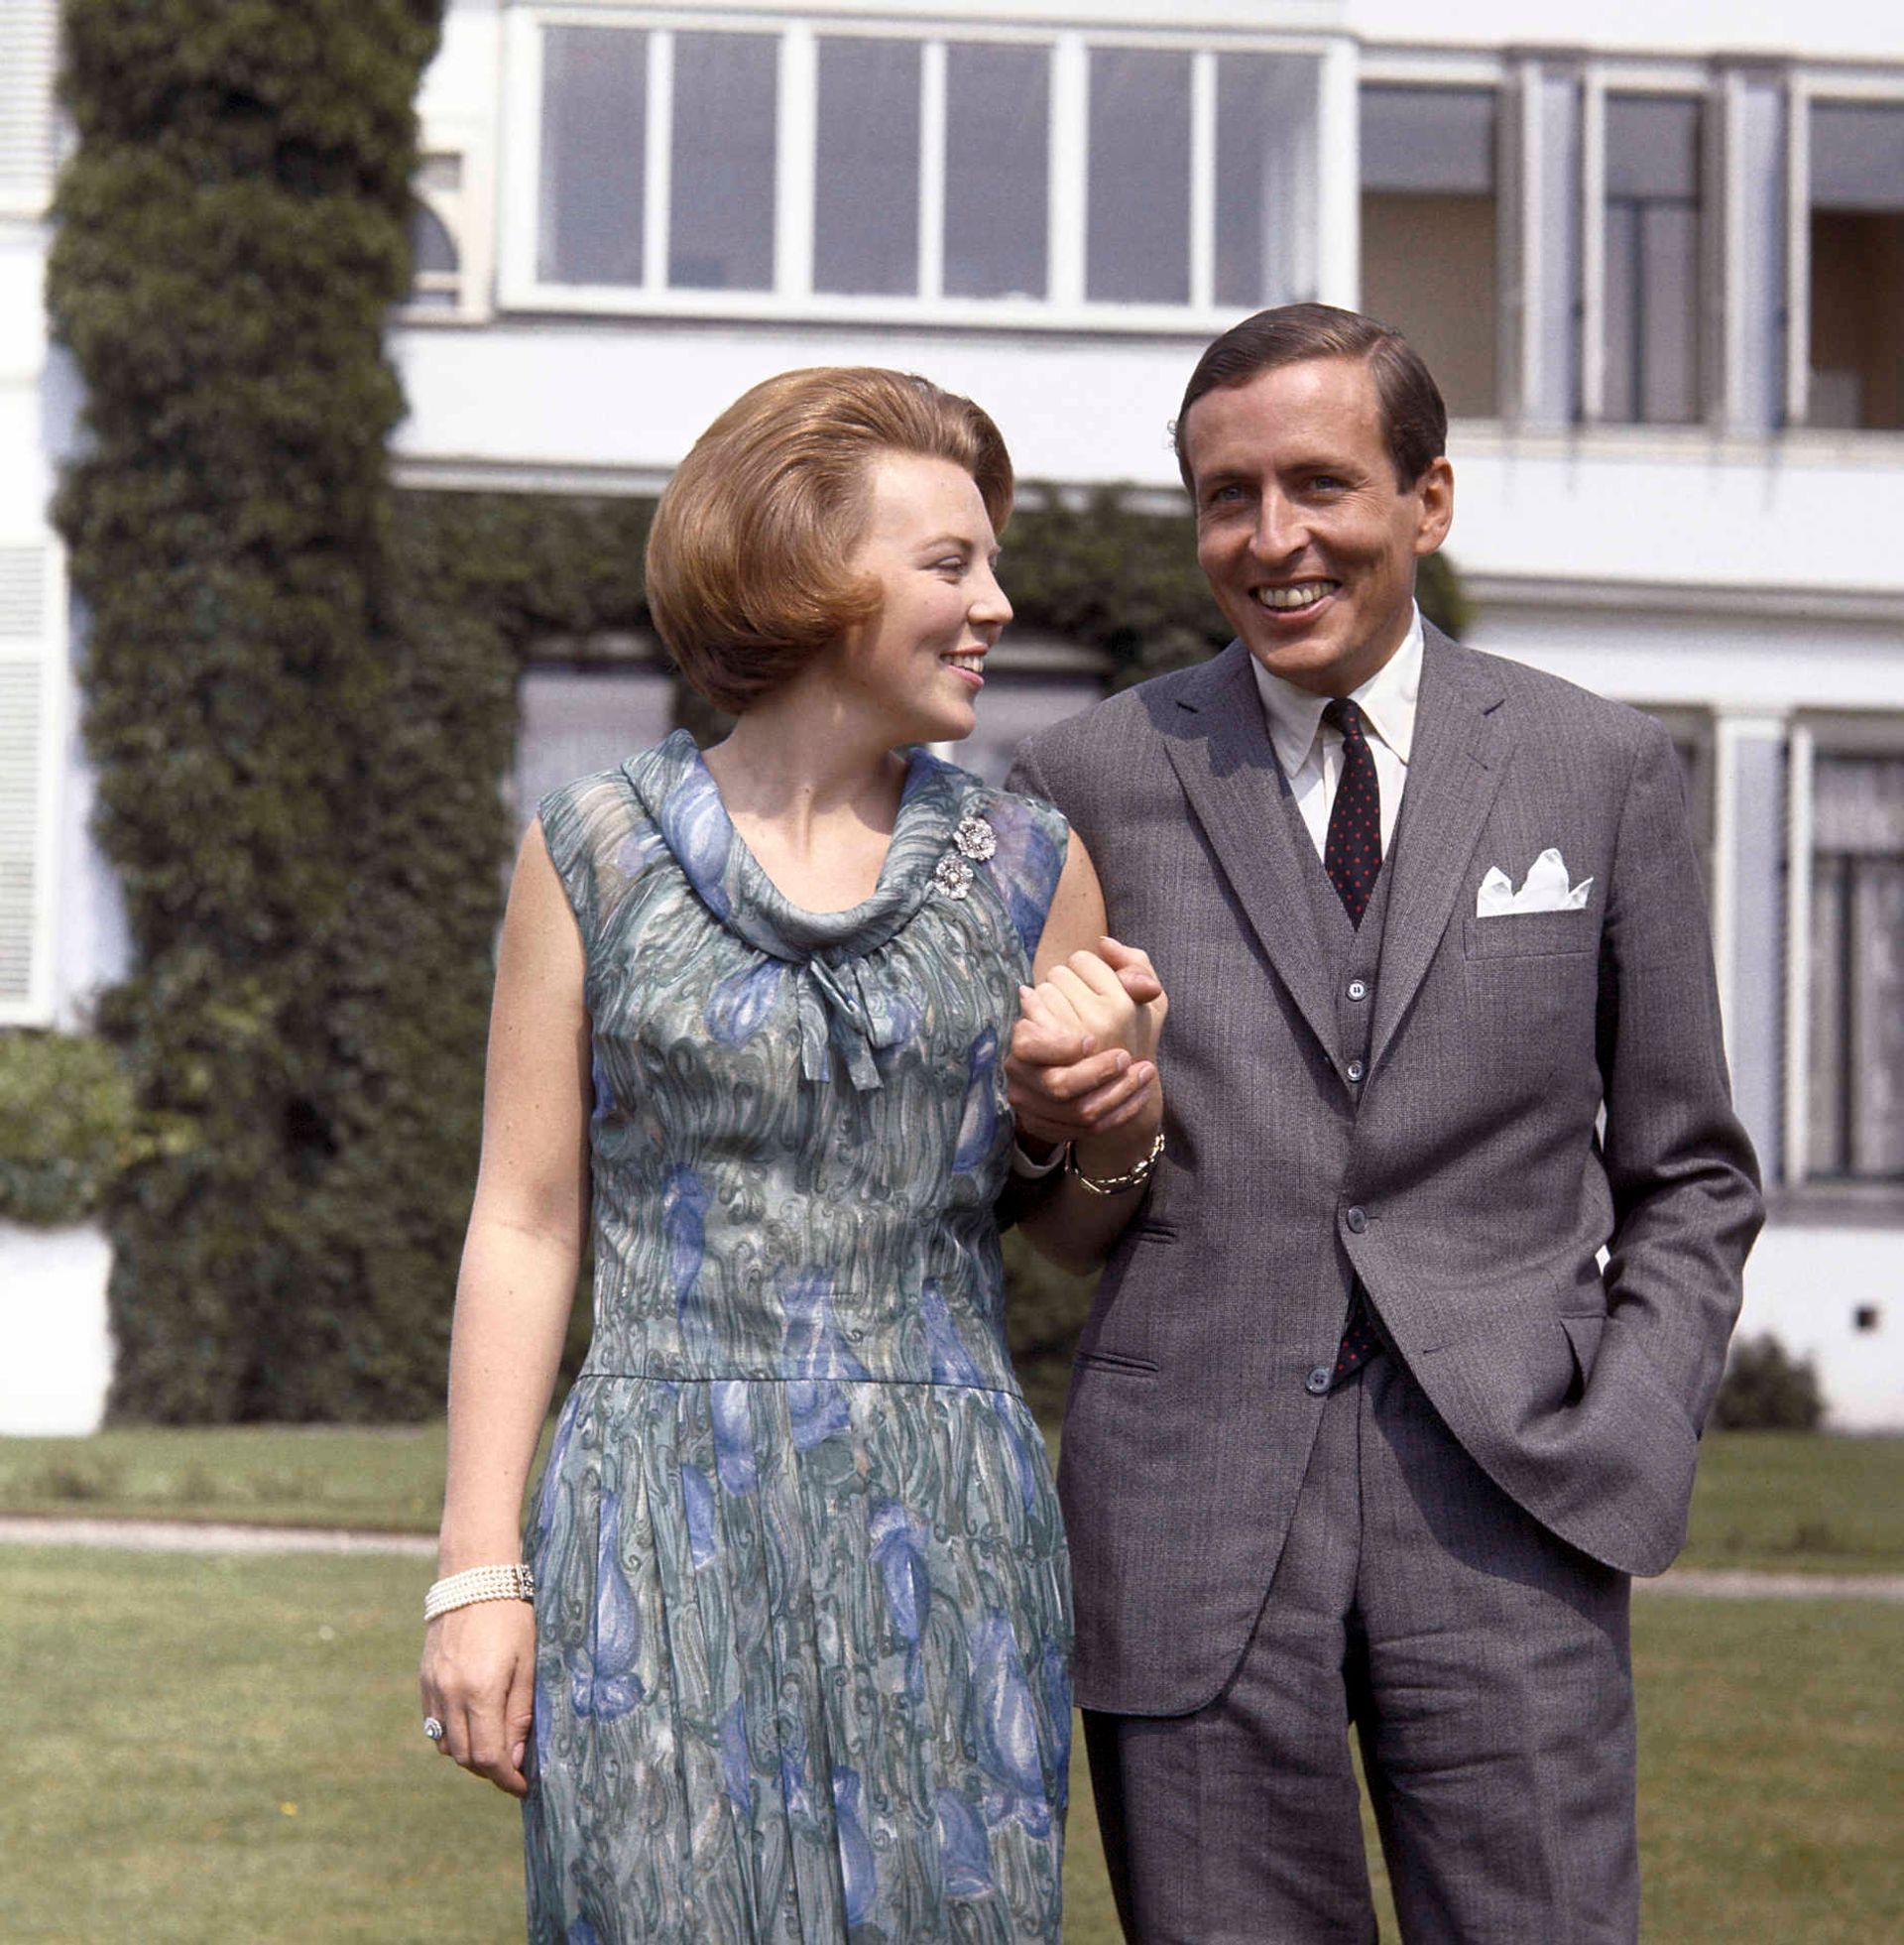 1965-Prinses-Beatrix-stelt-haar-verloofde-Claus-von-Amsberg-voor-in-de-tuin-van-paleis-Soestdijk.jpg